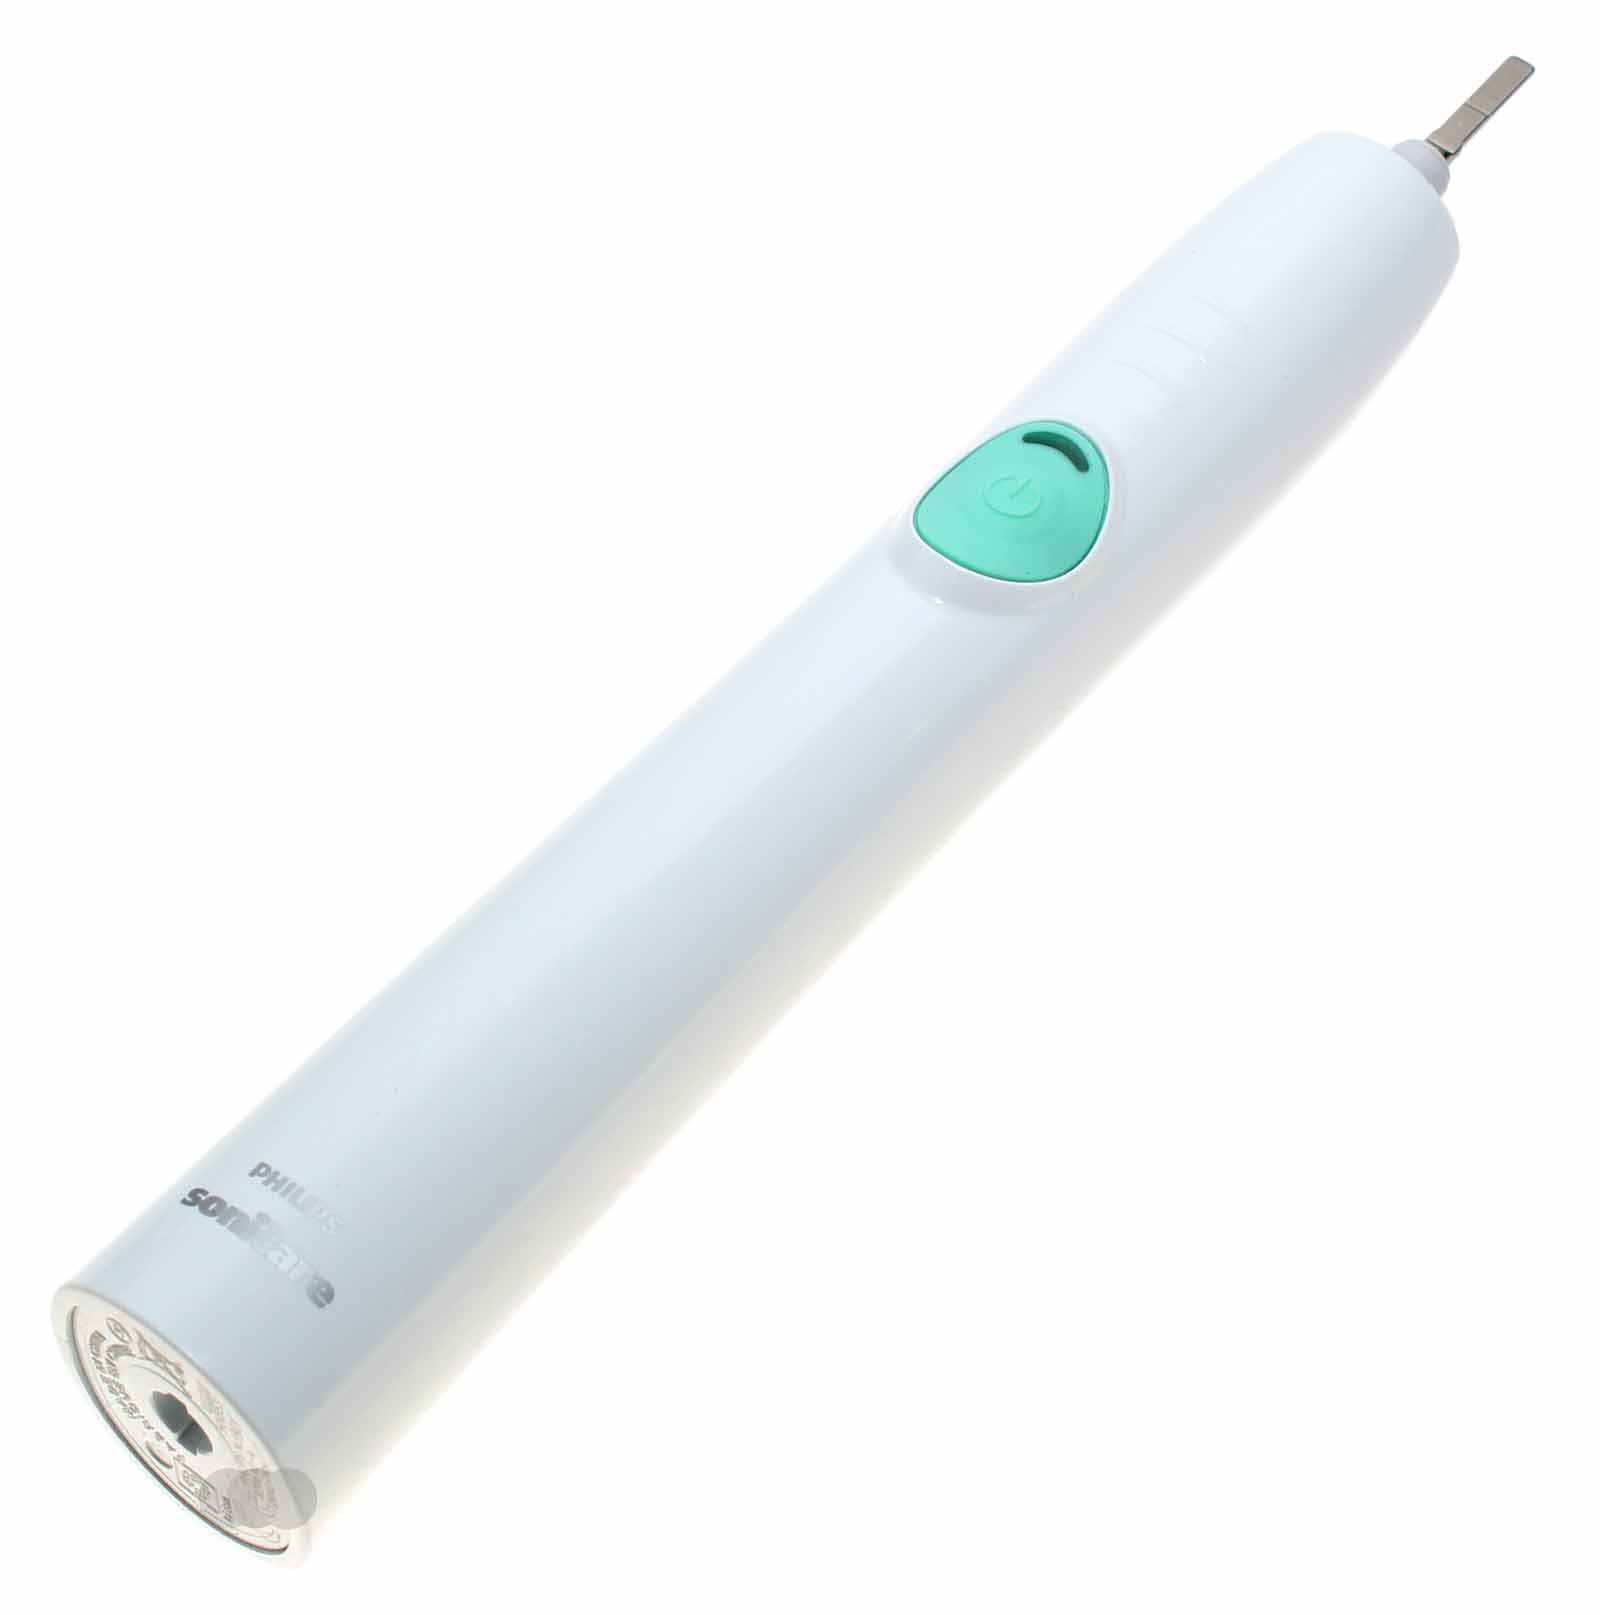 Gebrauchte (wie neu) Philips Sonicare 3 Series HX6530 EasyClean elektrische Zahnbürste (Handstück), Zahnbürstengriff  in Farbe weiß 